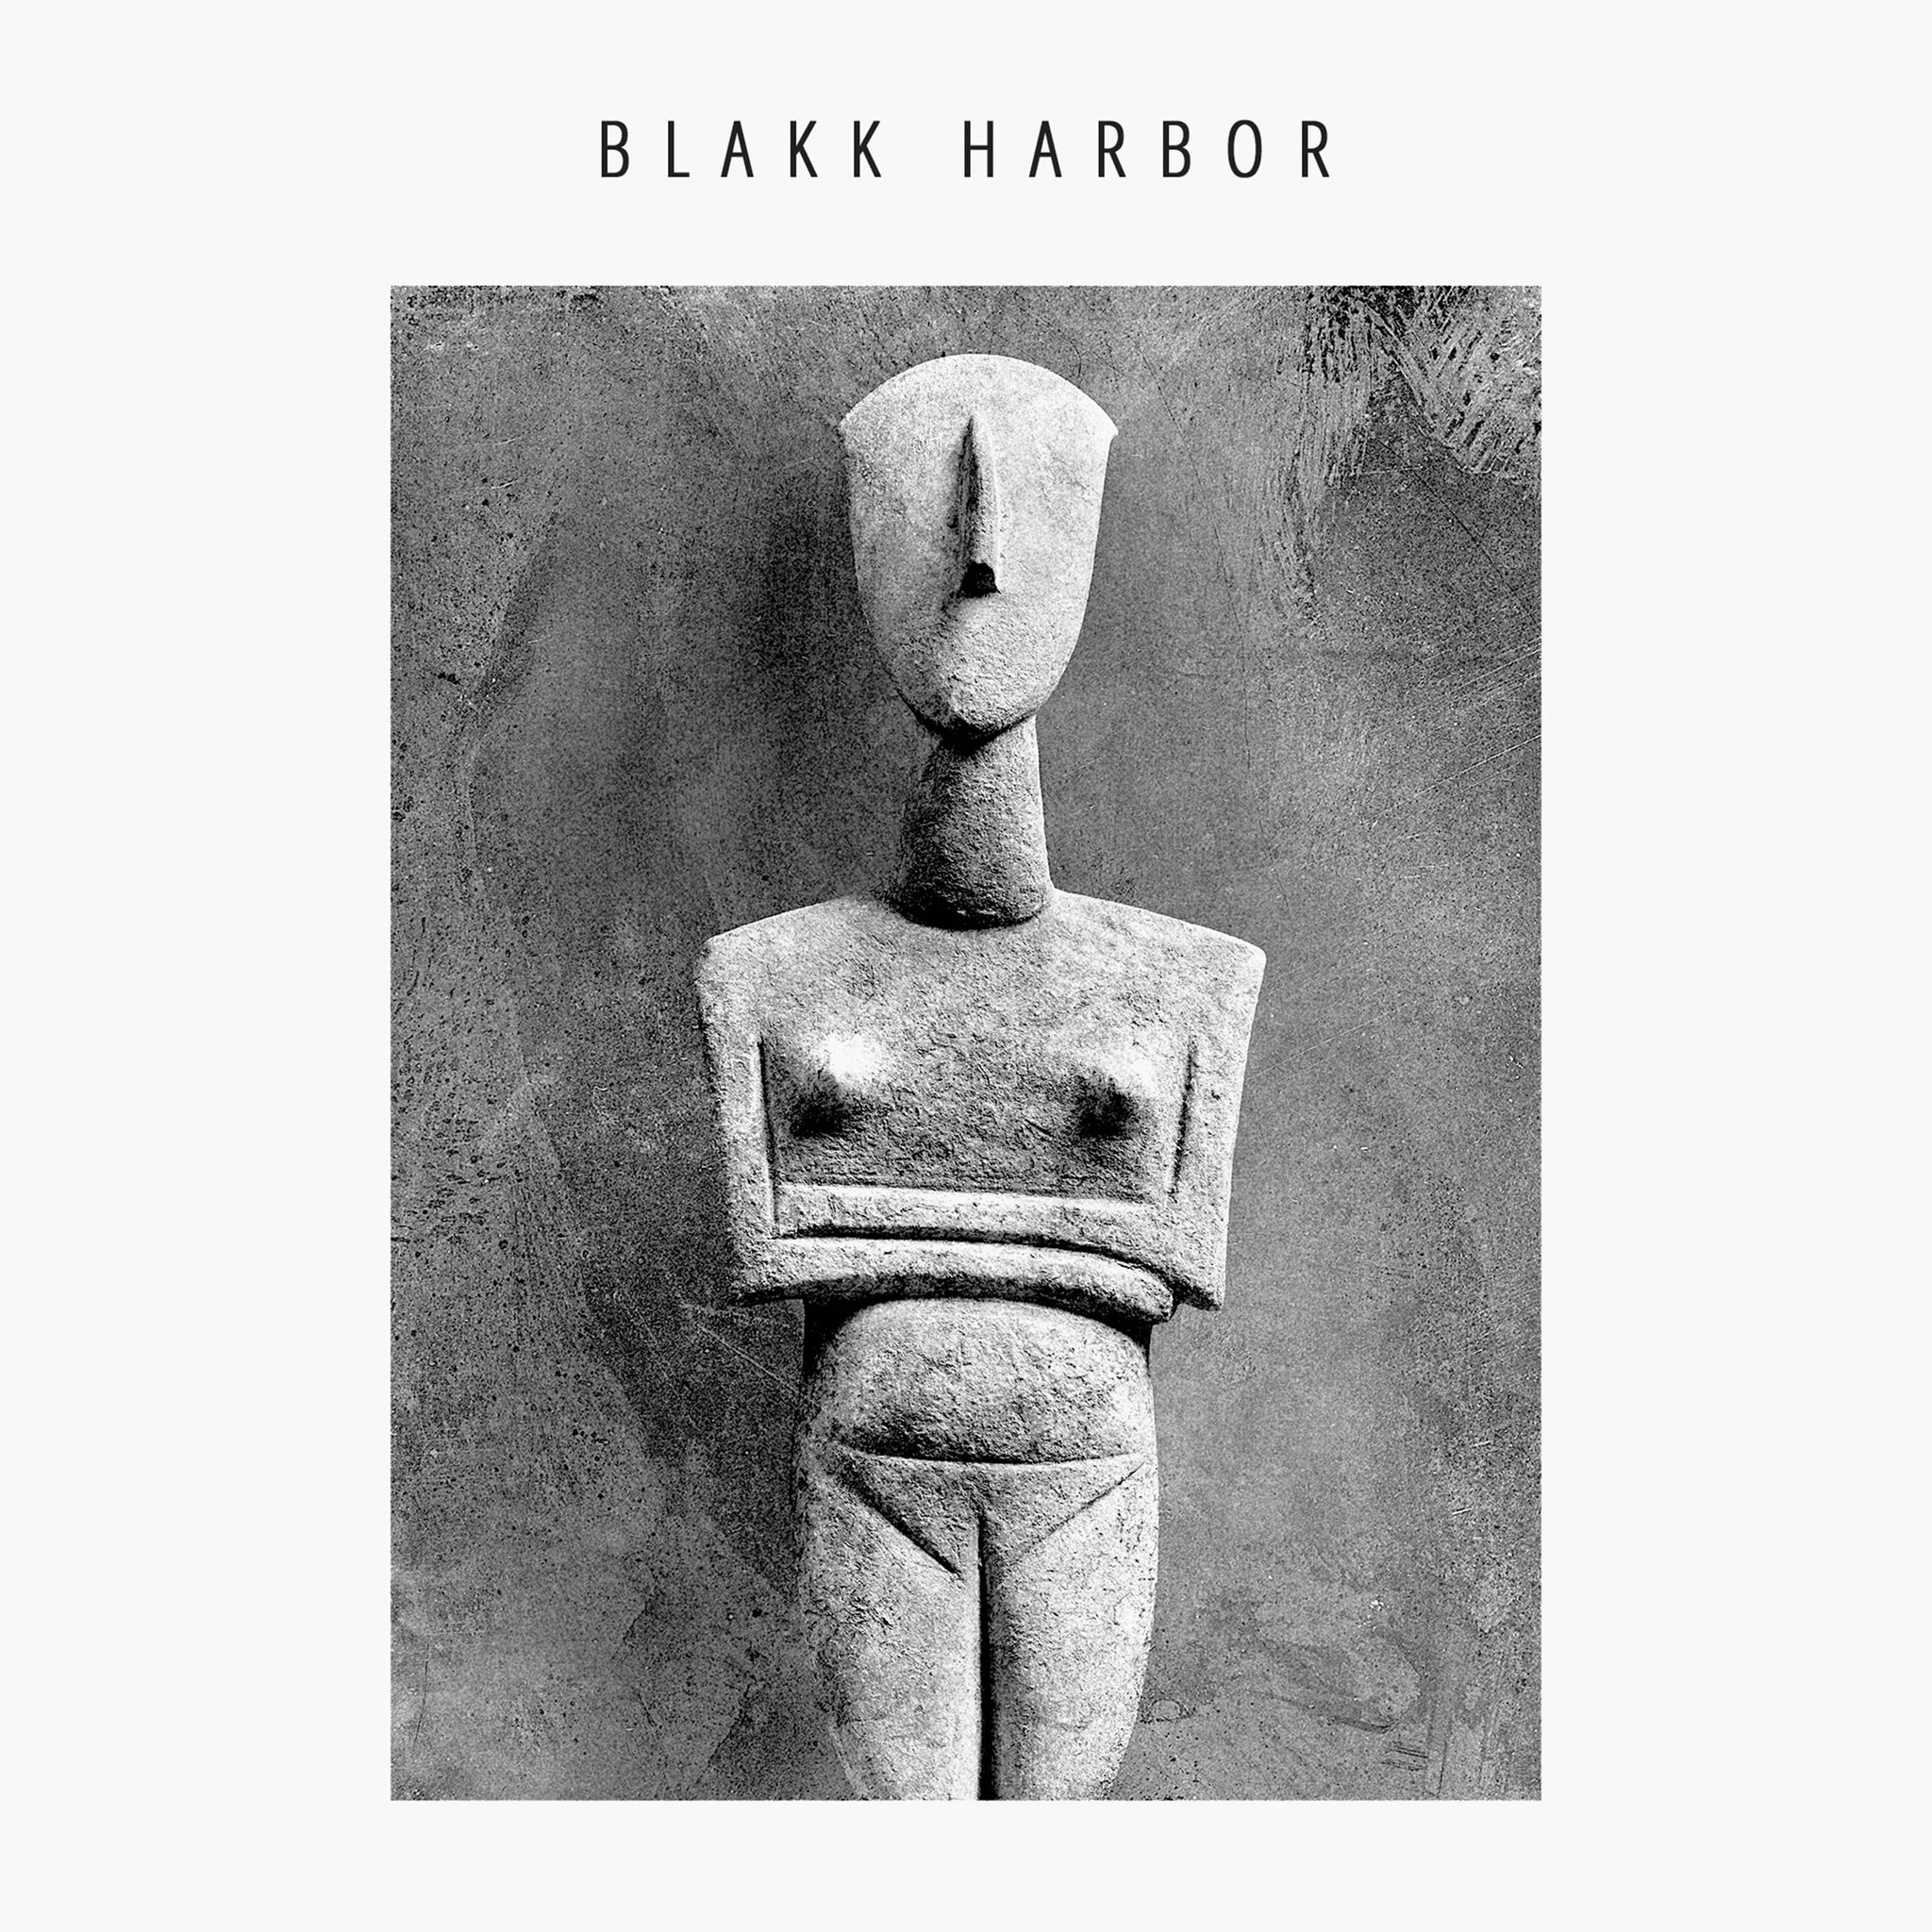 Blakk Harbor - A Modern Dialect